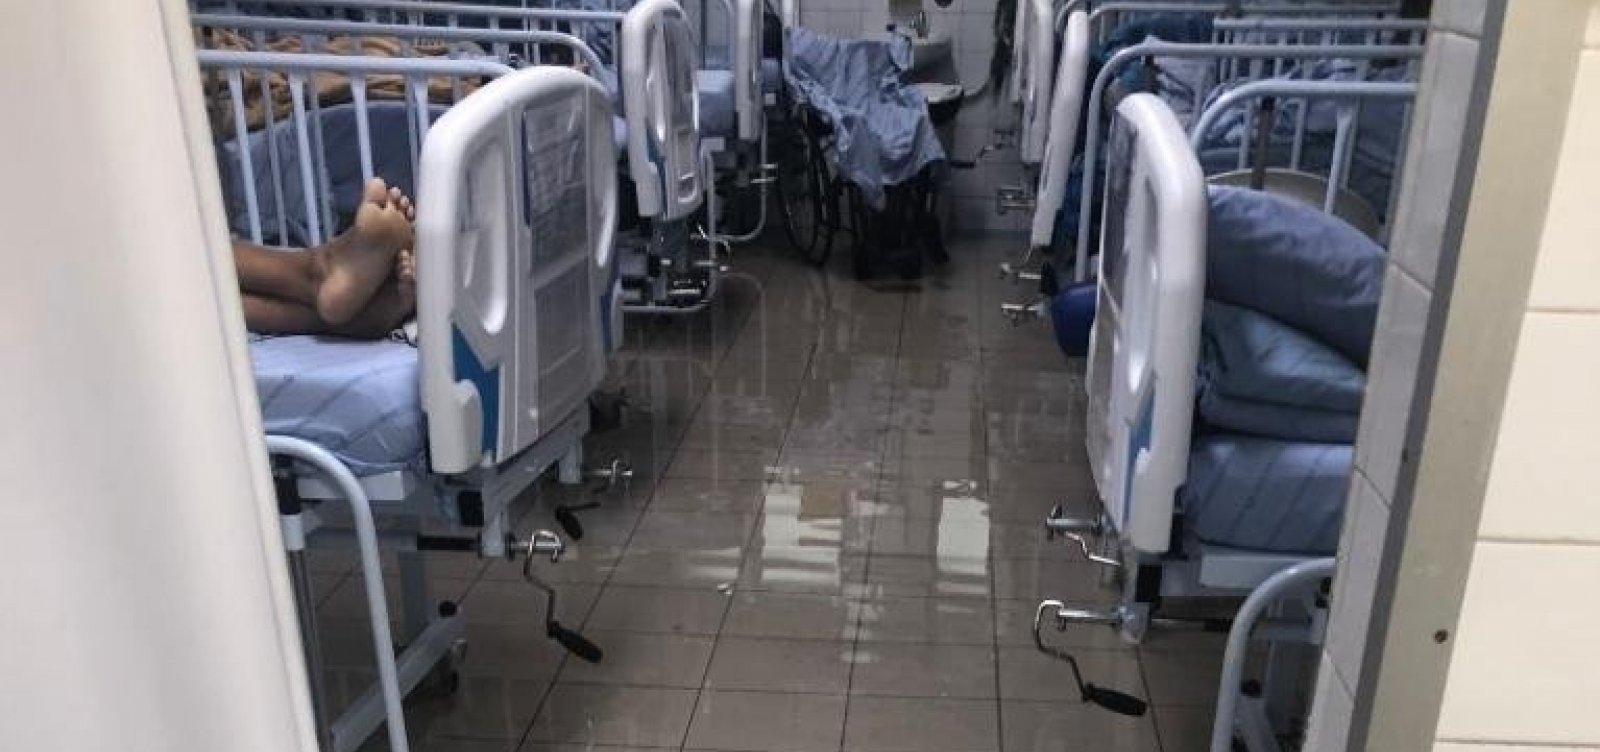 Enfermaria do hospital Irmã Dulce fica inundada após chuva em Salvador; veja vídeo